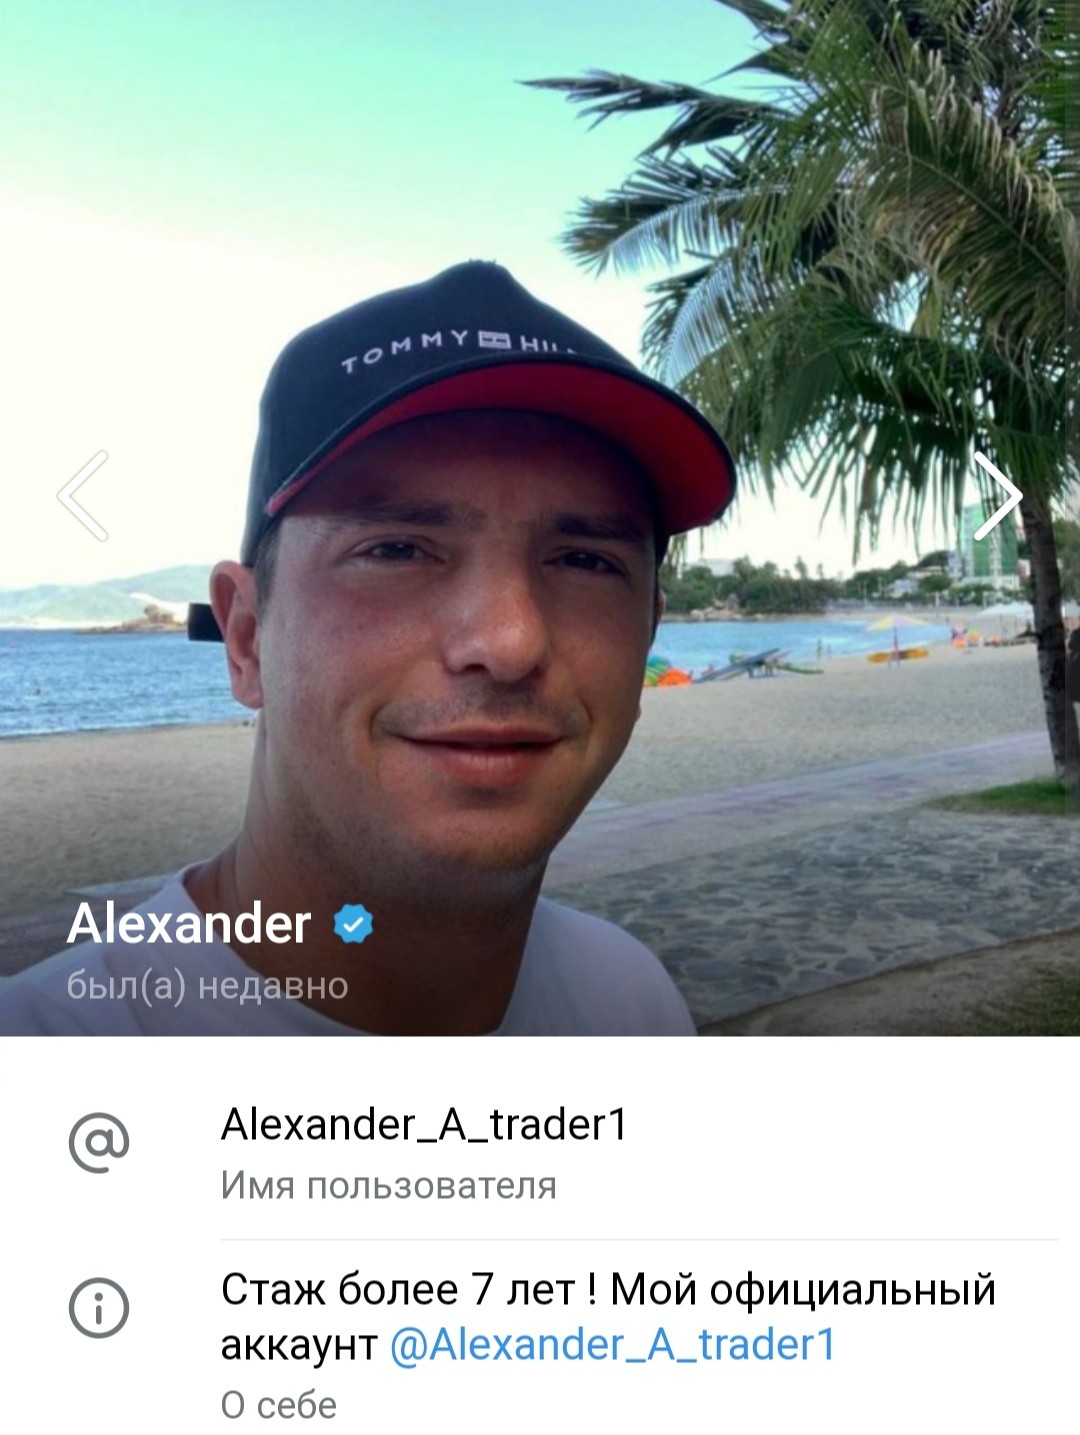 Телеграм alexander_a_trader1